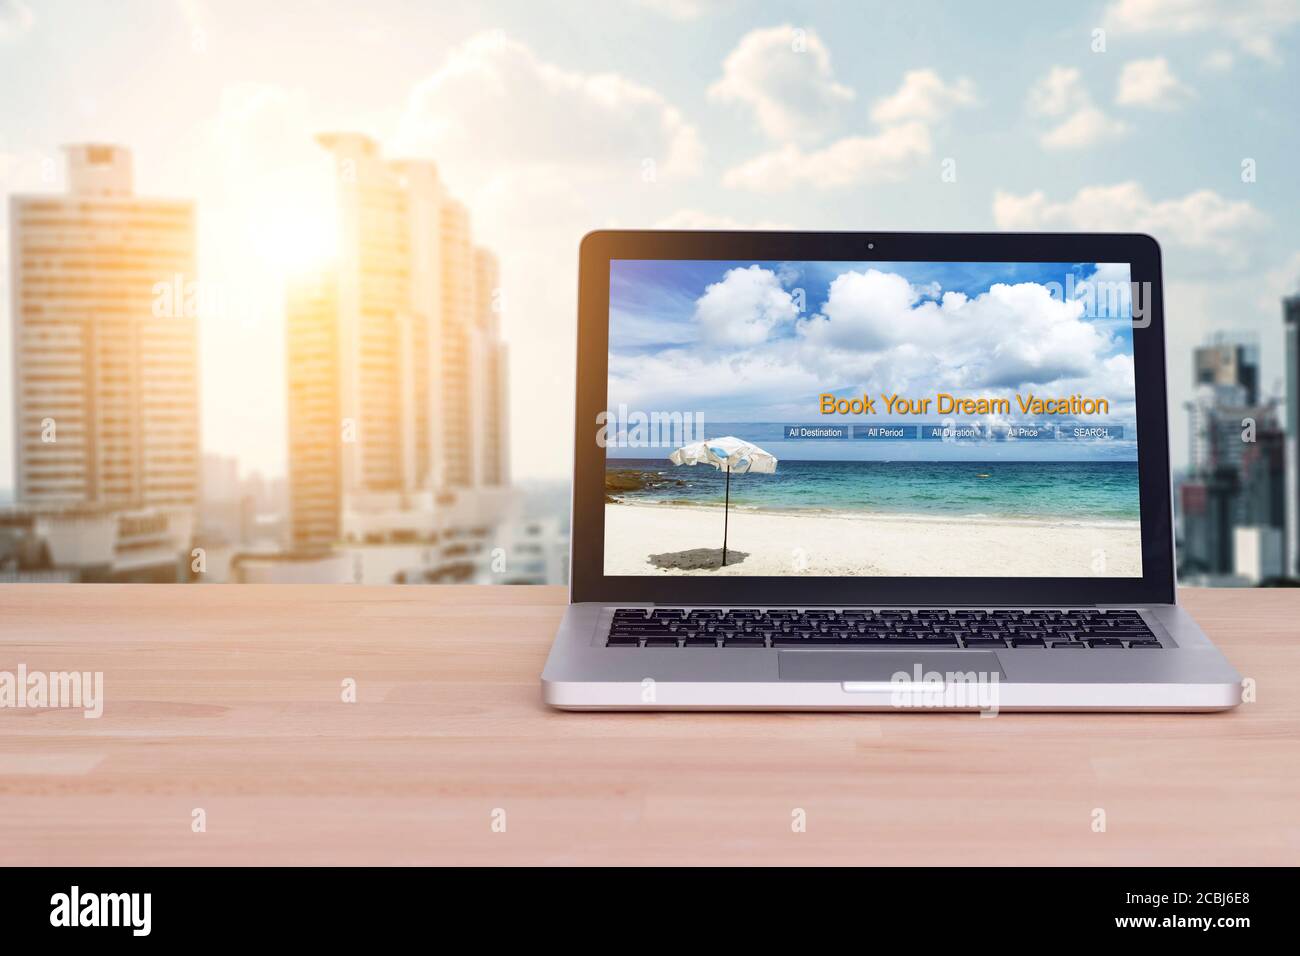 Reise, Urlaub, Urlaubsplanung Konzept: Laptop mit Website buchen Sie Ihren Traumurlaub am Bildschirm im Büro Arbeitsplatz für Geschäftsleute planen Stockfoto